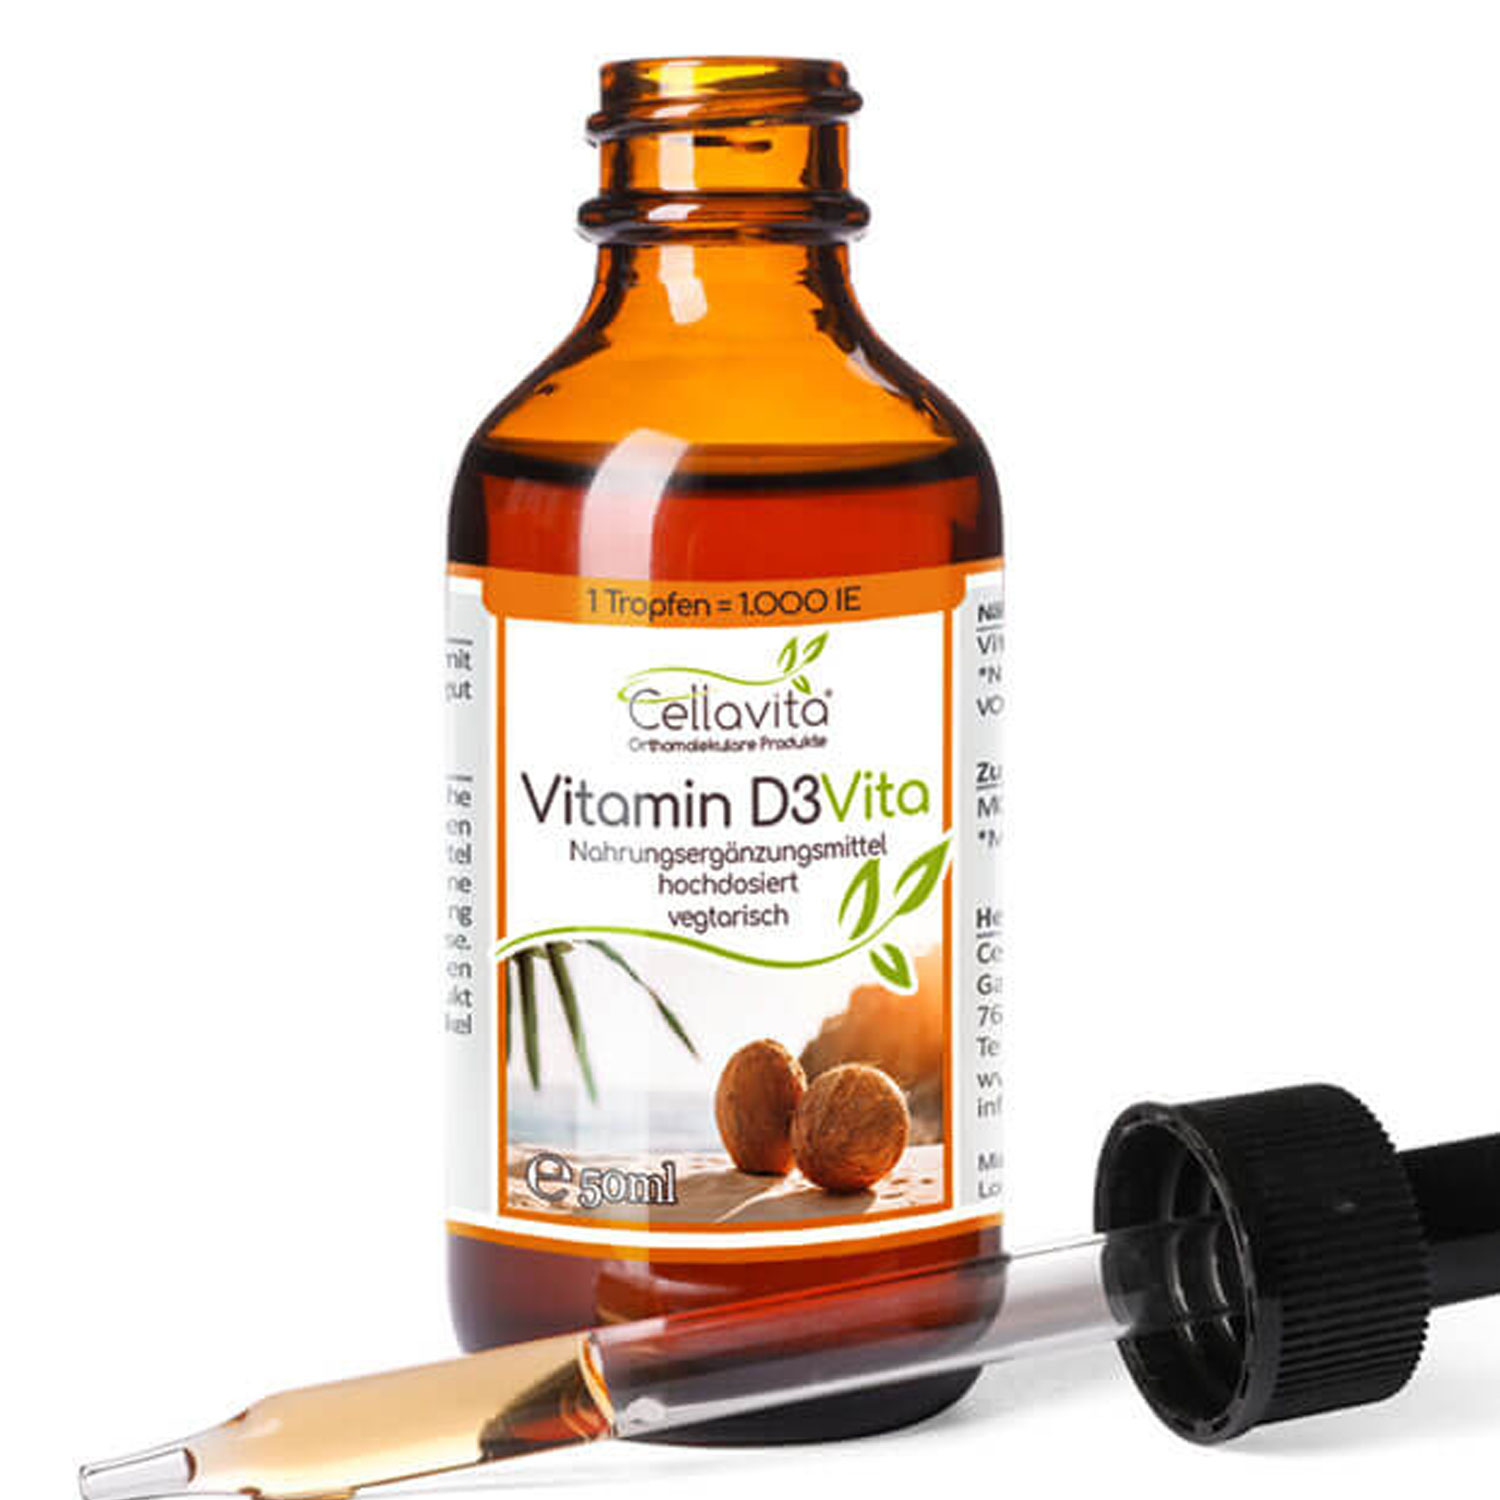 Vitamin D3 Vita 50ml (1 Tropfen = 1.000 IE) hochdosiert von Cellavita